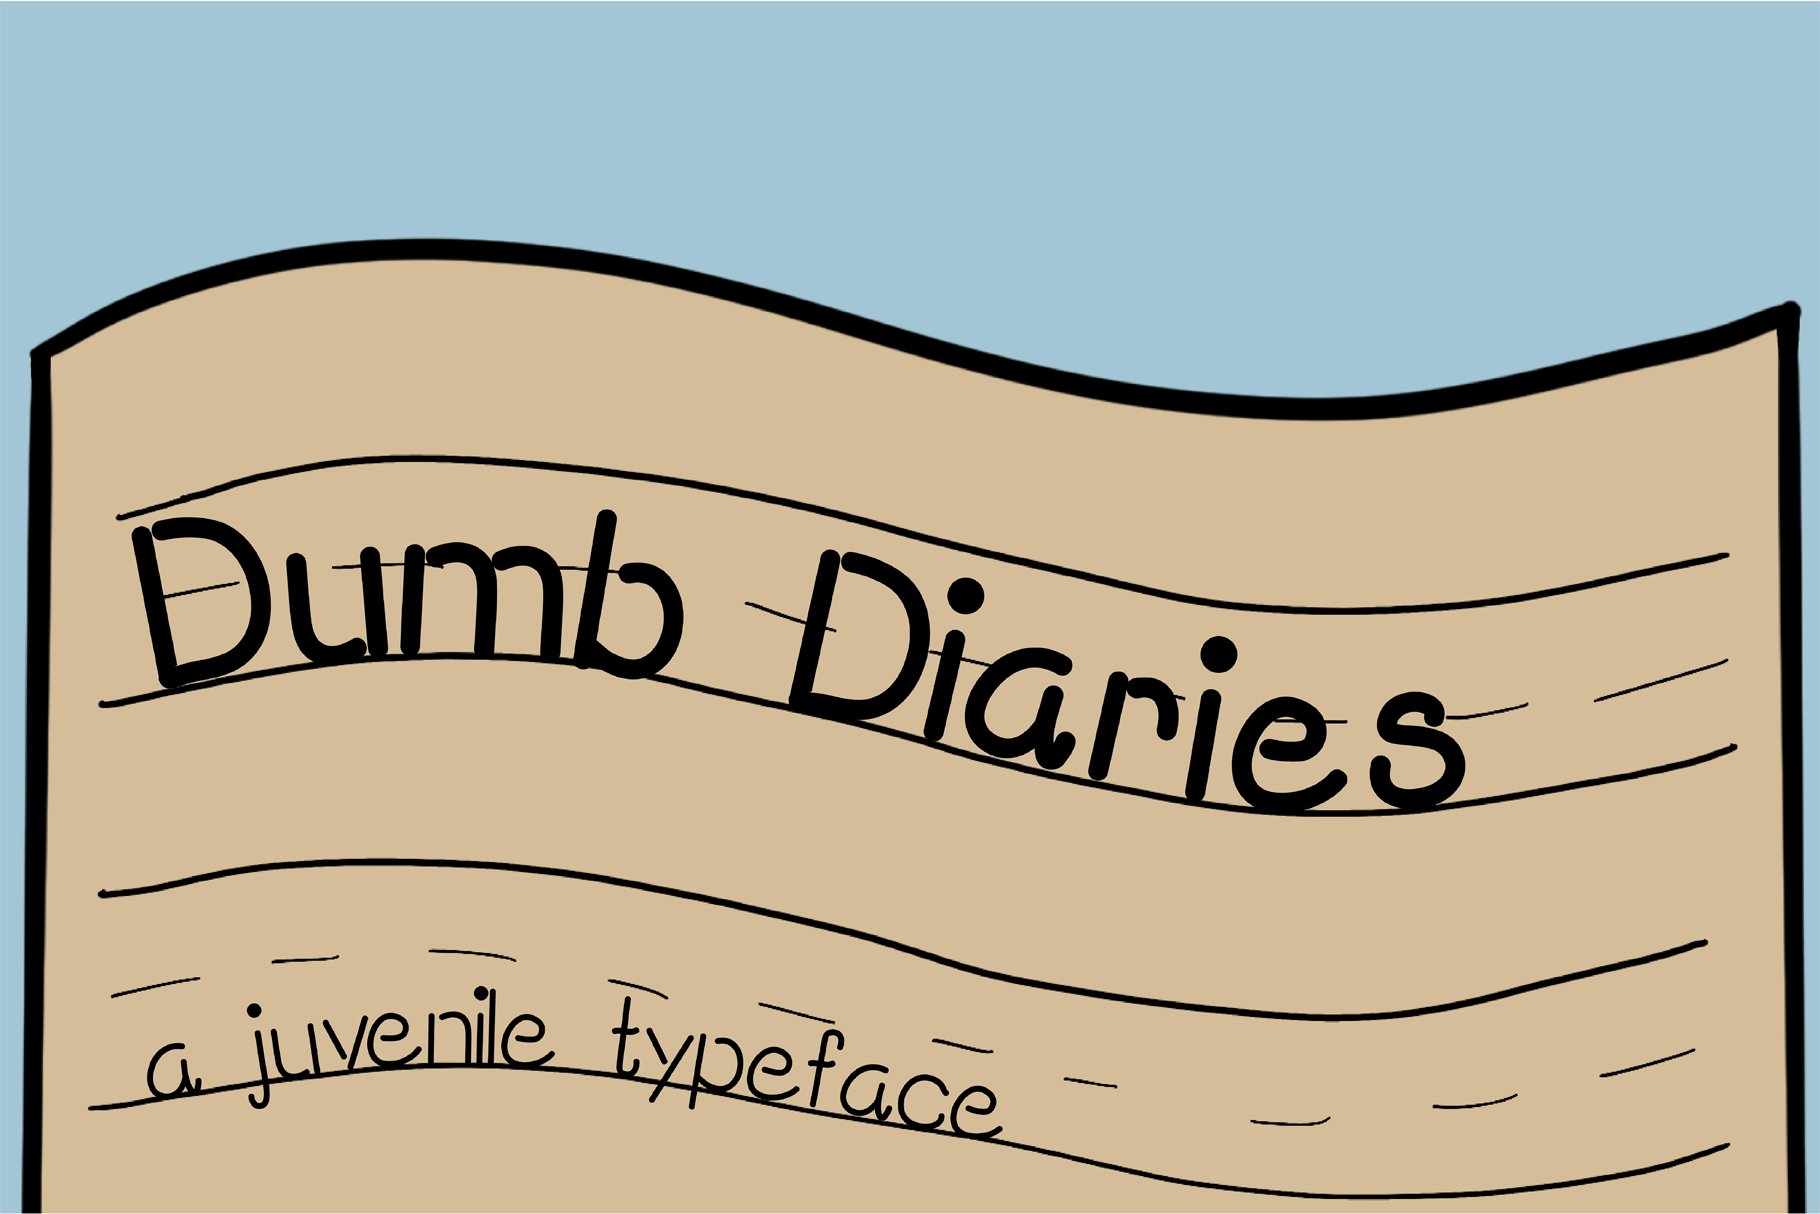 Dumb Diaries Display Typeface cover image.